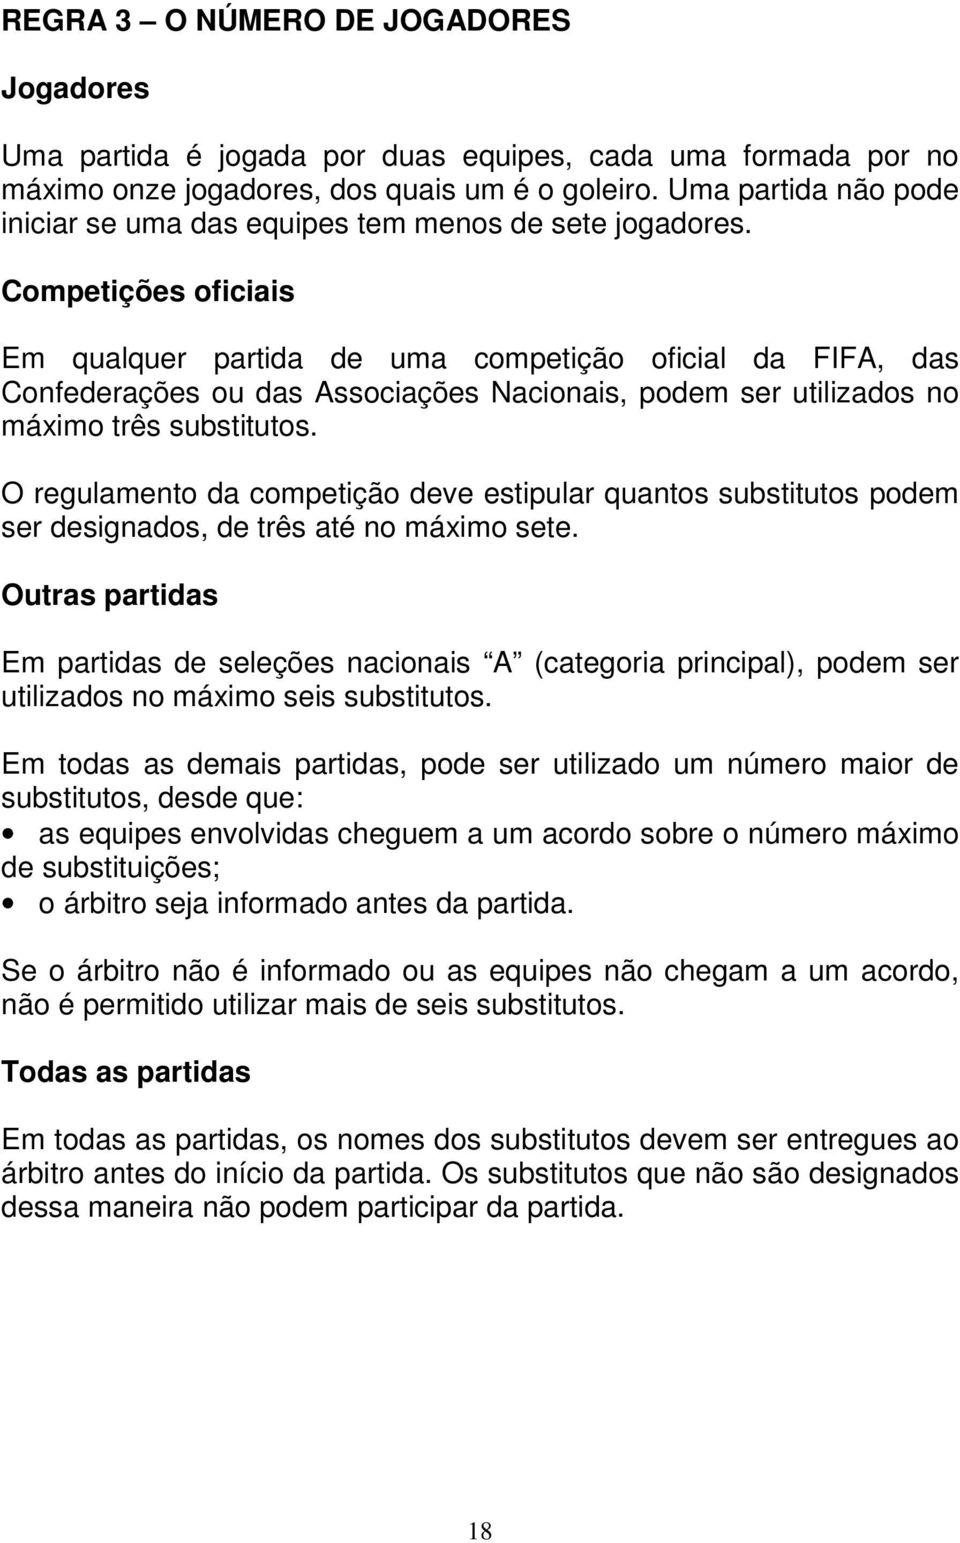 Competições oficiais Em qualquer partida de uma competição oficial da FIFA, das Confederações ou das Associações Nacionais, podem ser utilizados no máximo três substitutos.